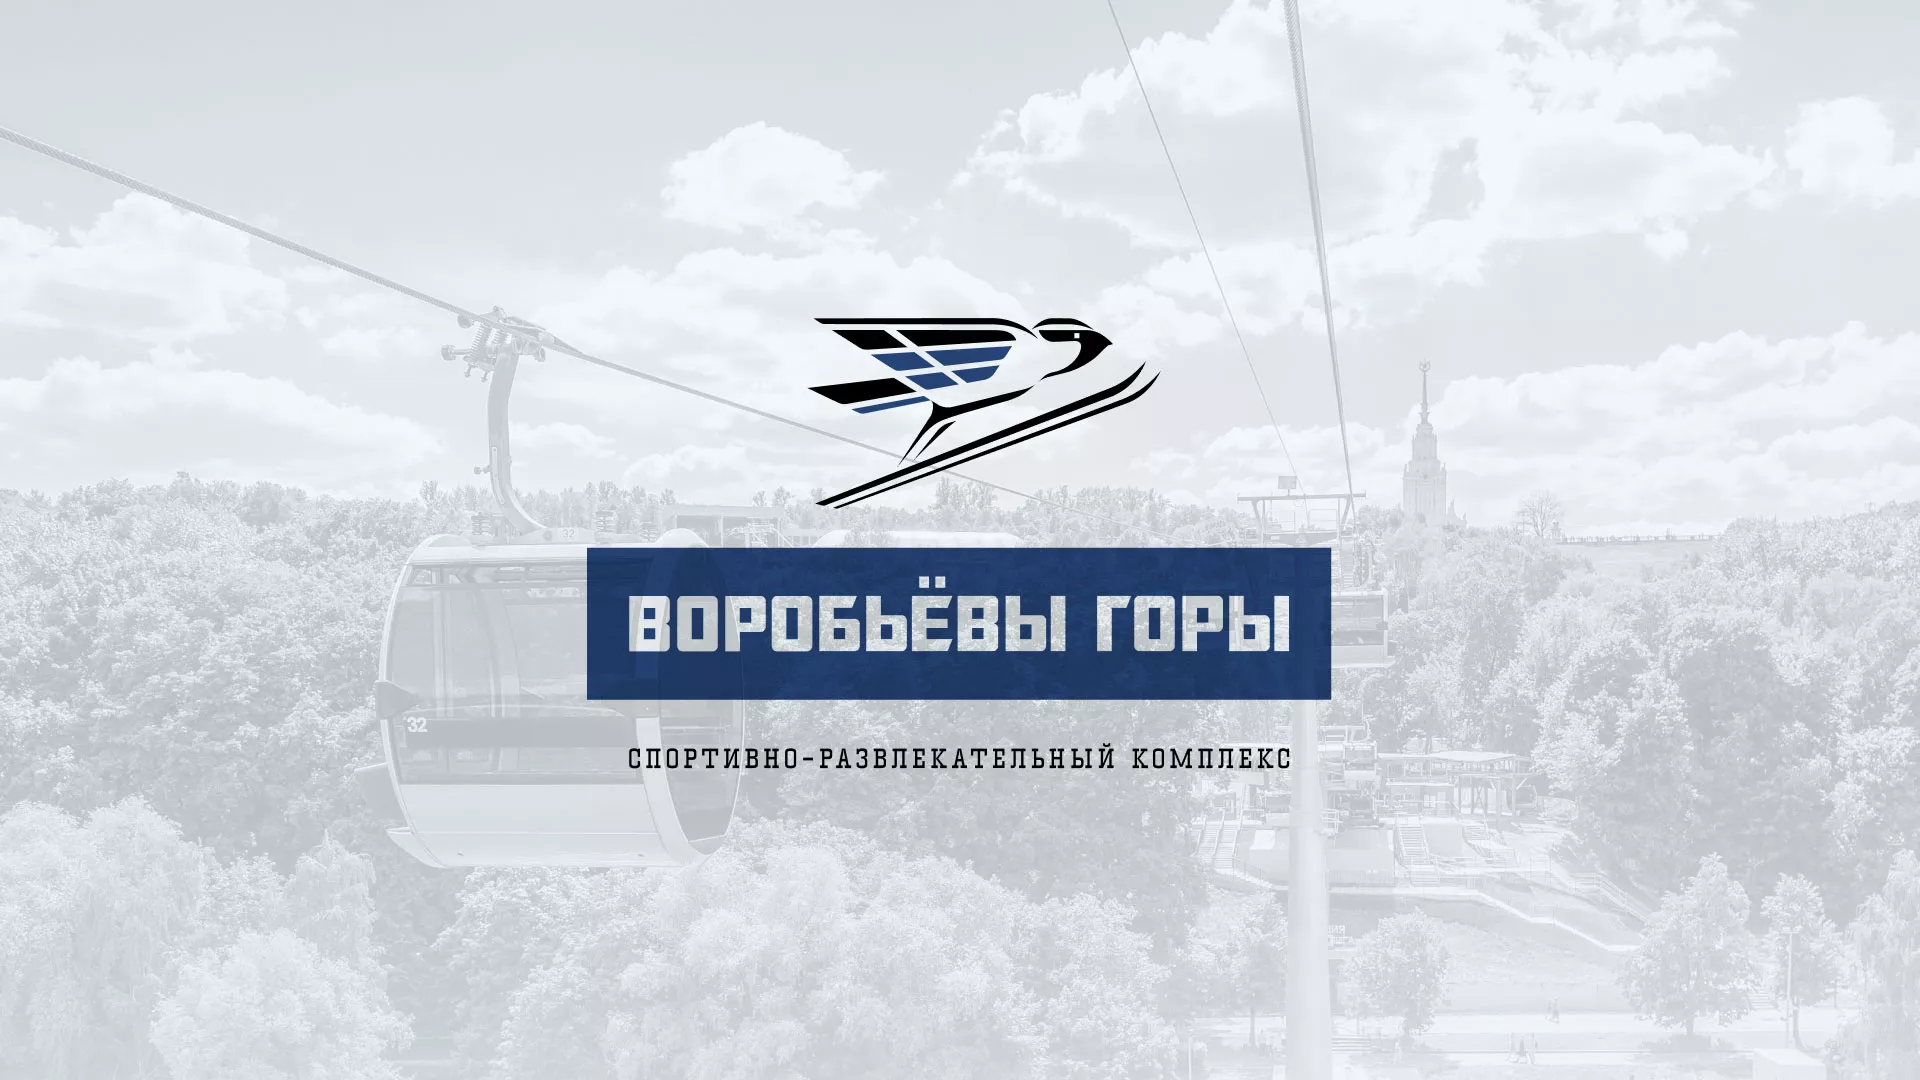 Разработка сайта в Протвино для спортивно-развлекательного комплекса «Воробьёвы горы»